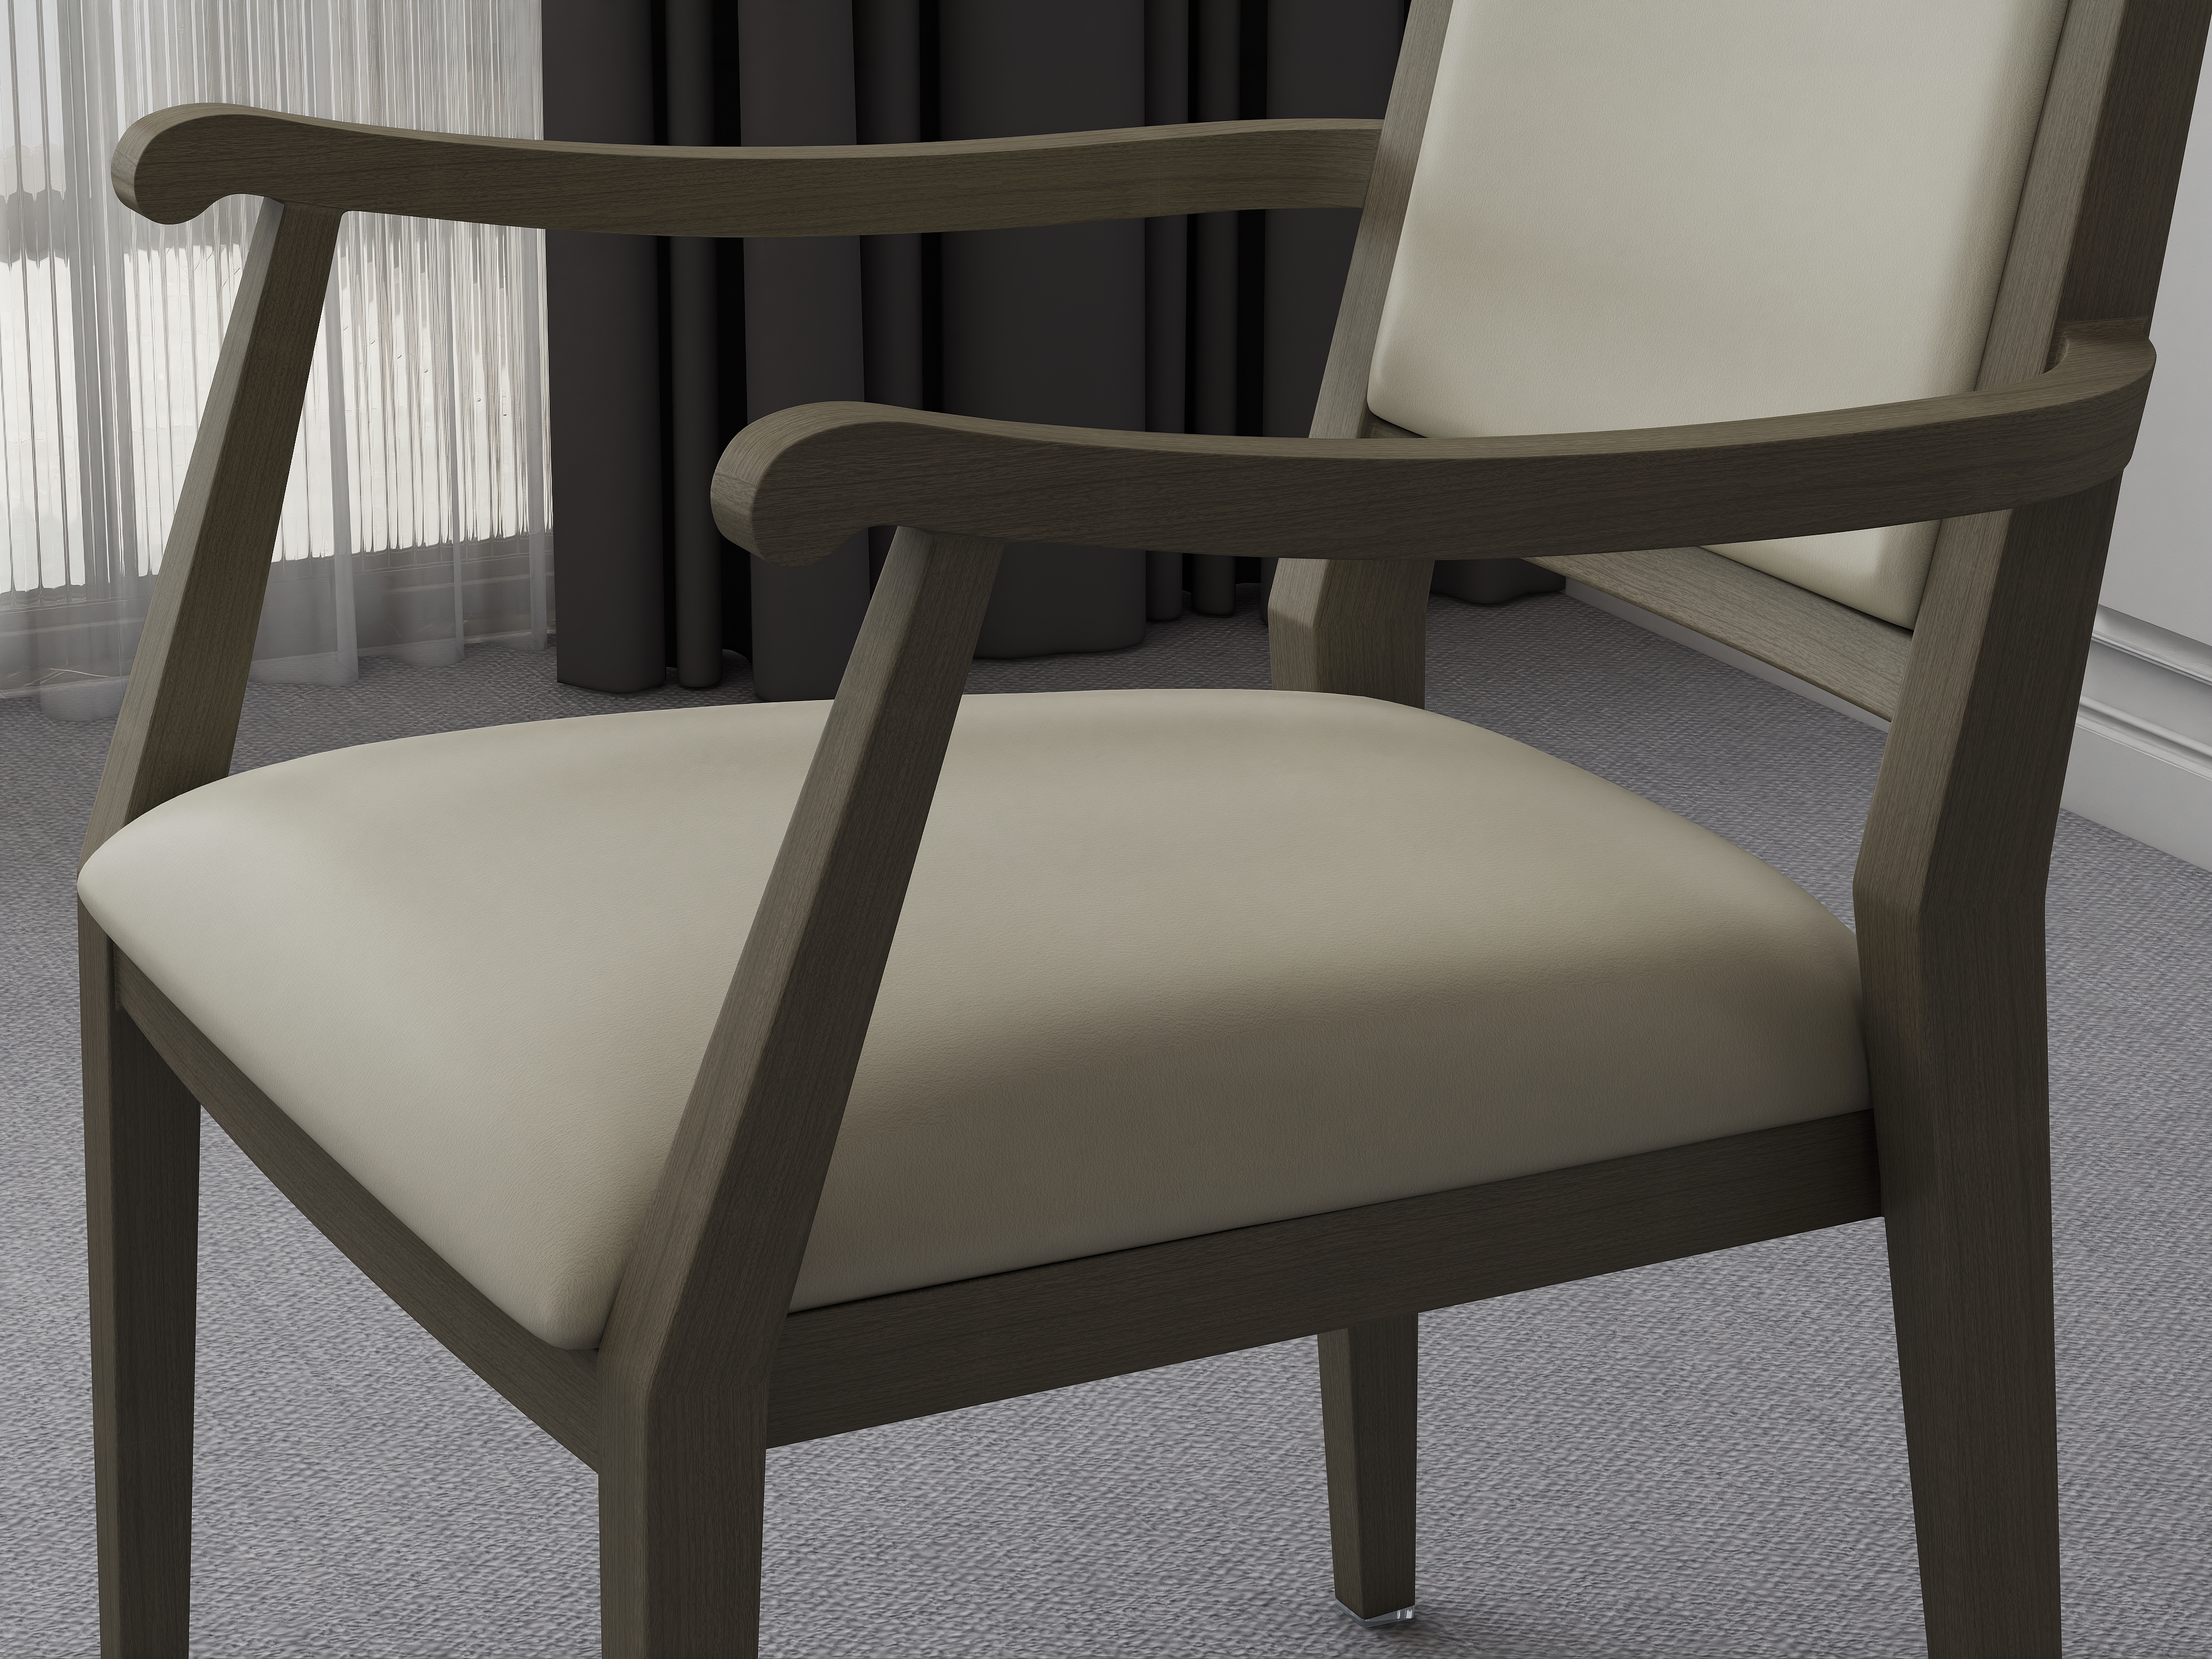 Hotel Banket Sandalyeleri -Amerikan Western Restaurant Otel Tasarımının Öne Çıkan Özellikleri Nelerdir?